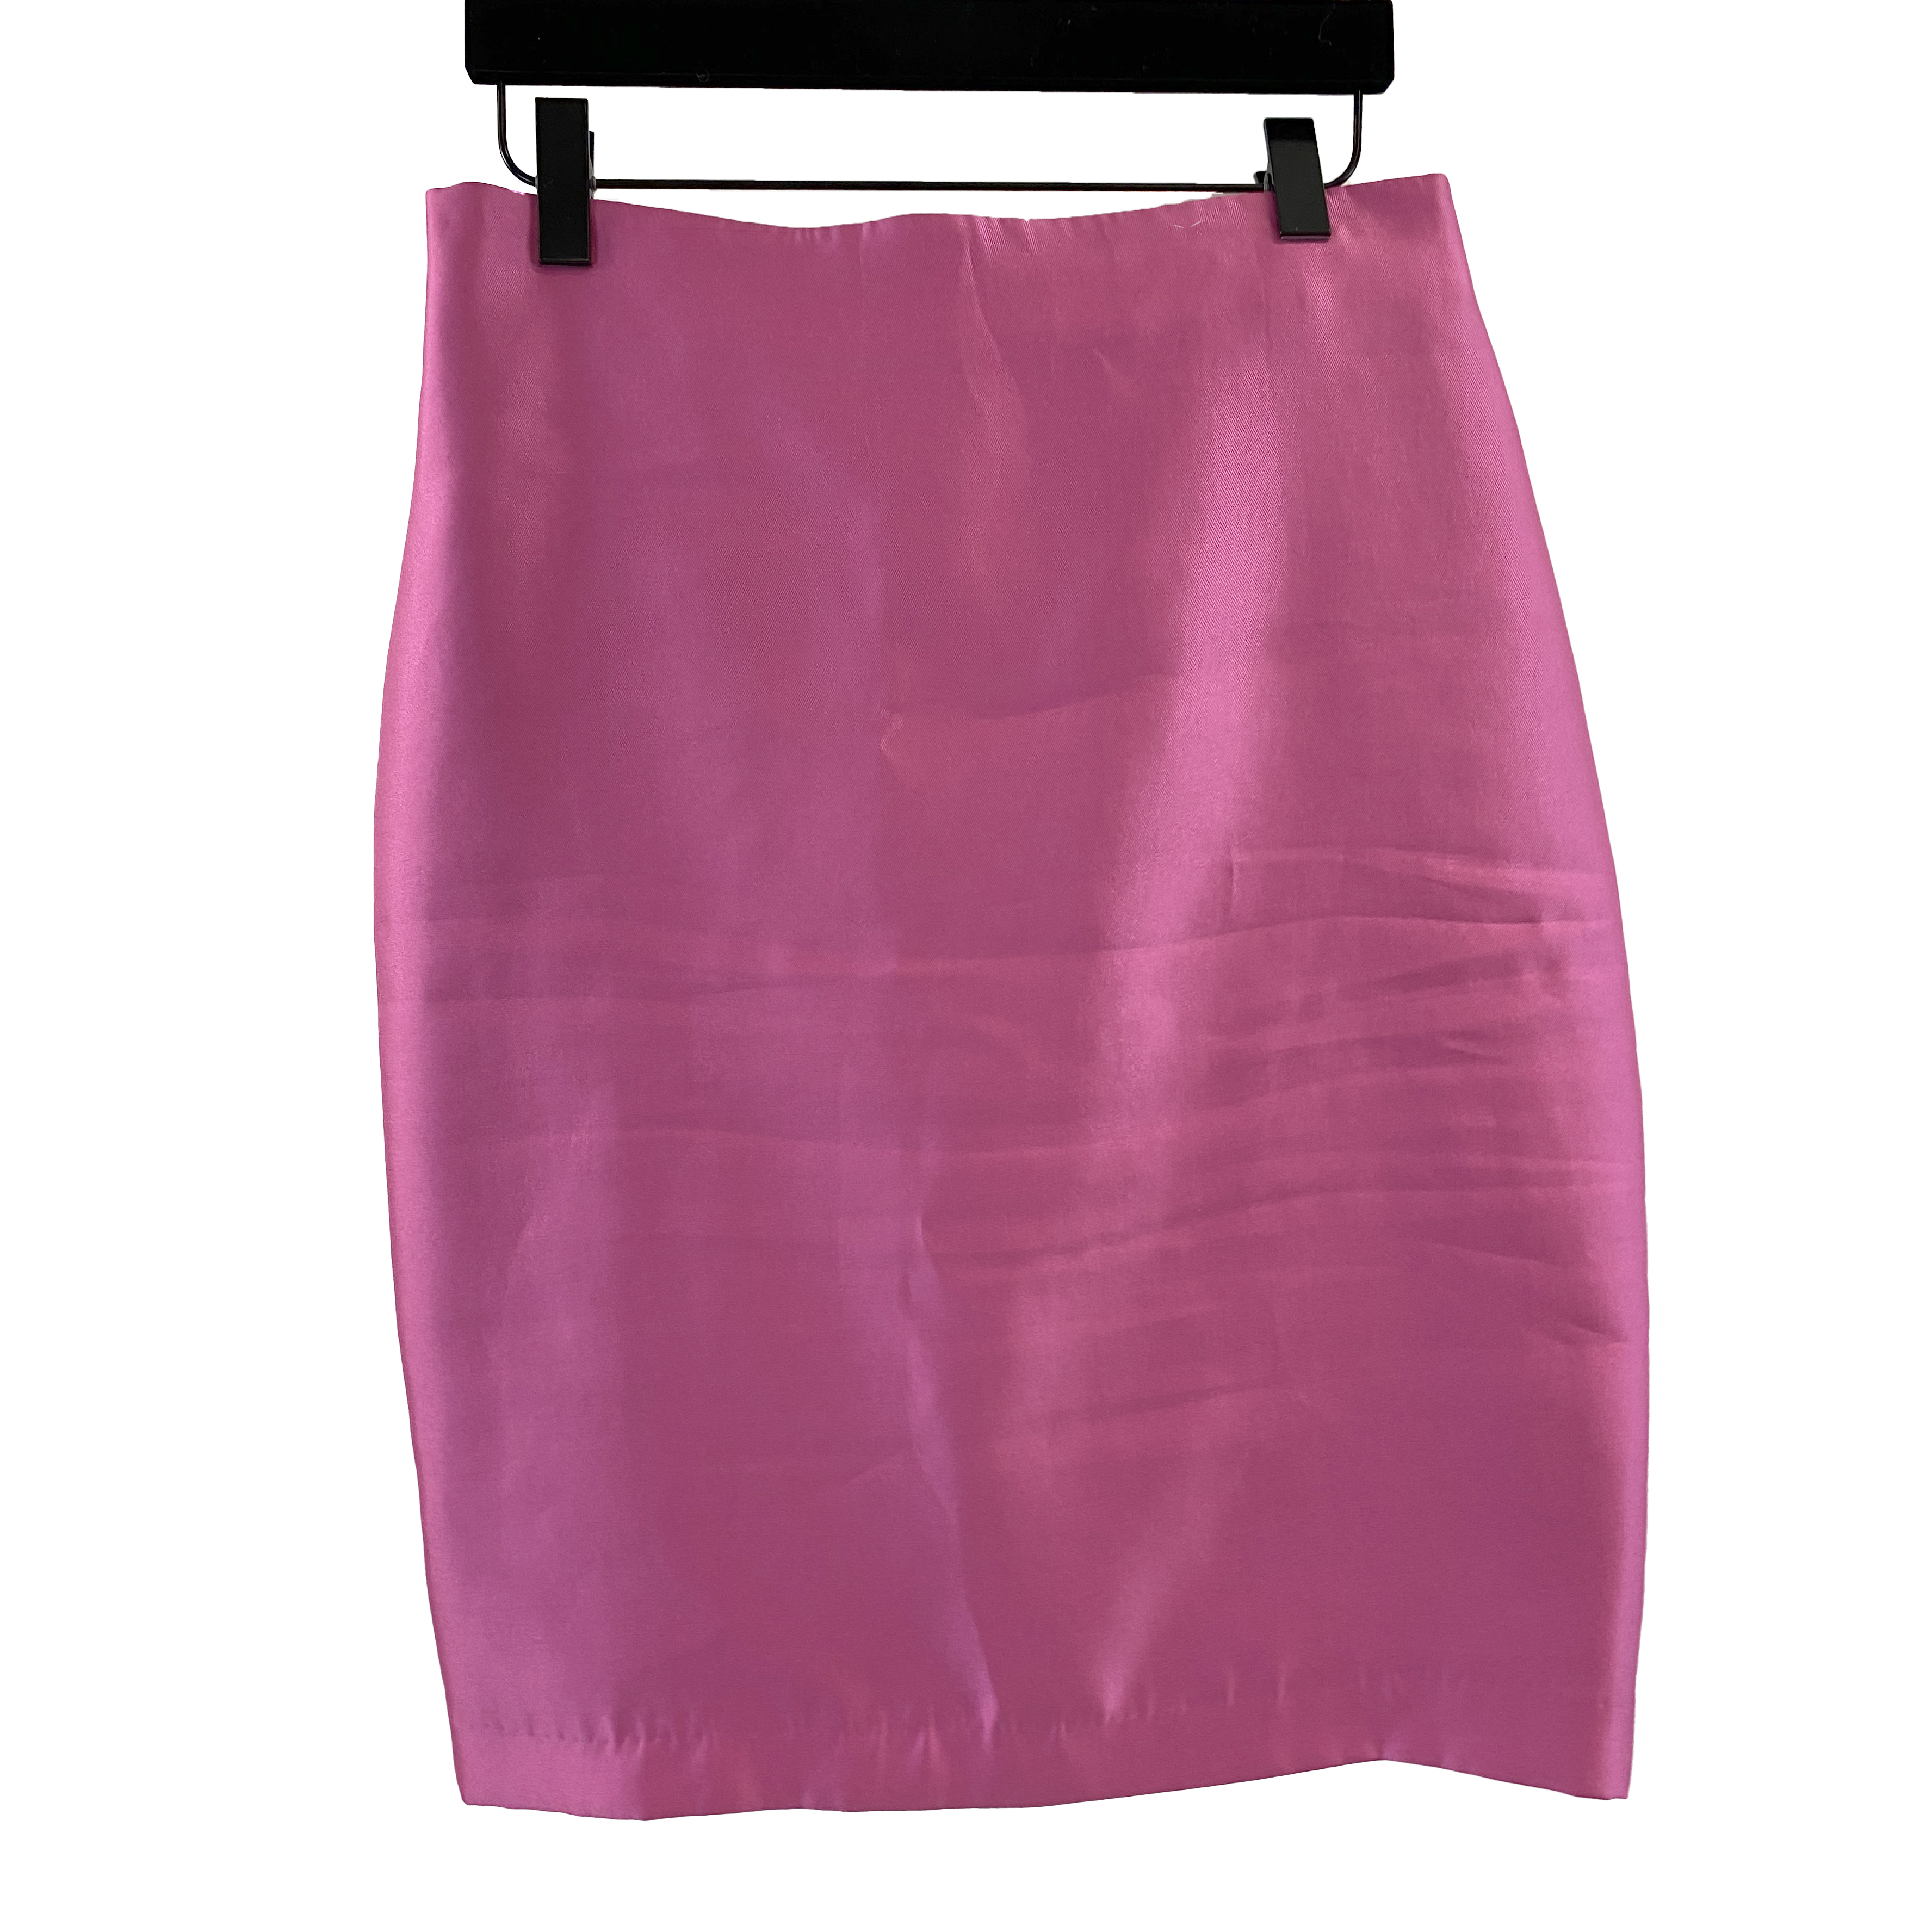 Carla Zampatti Hot Pink Skirt